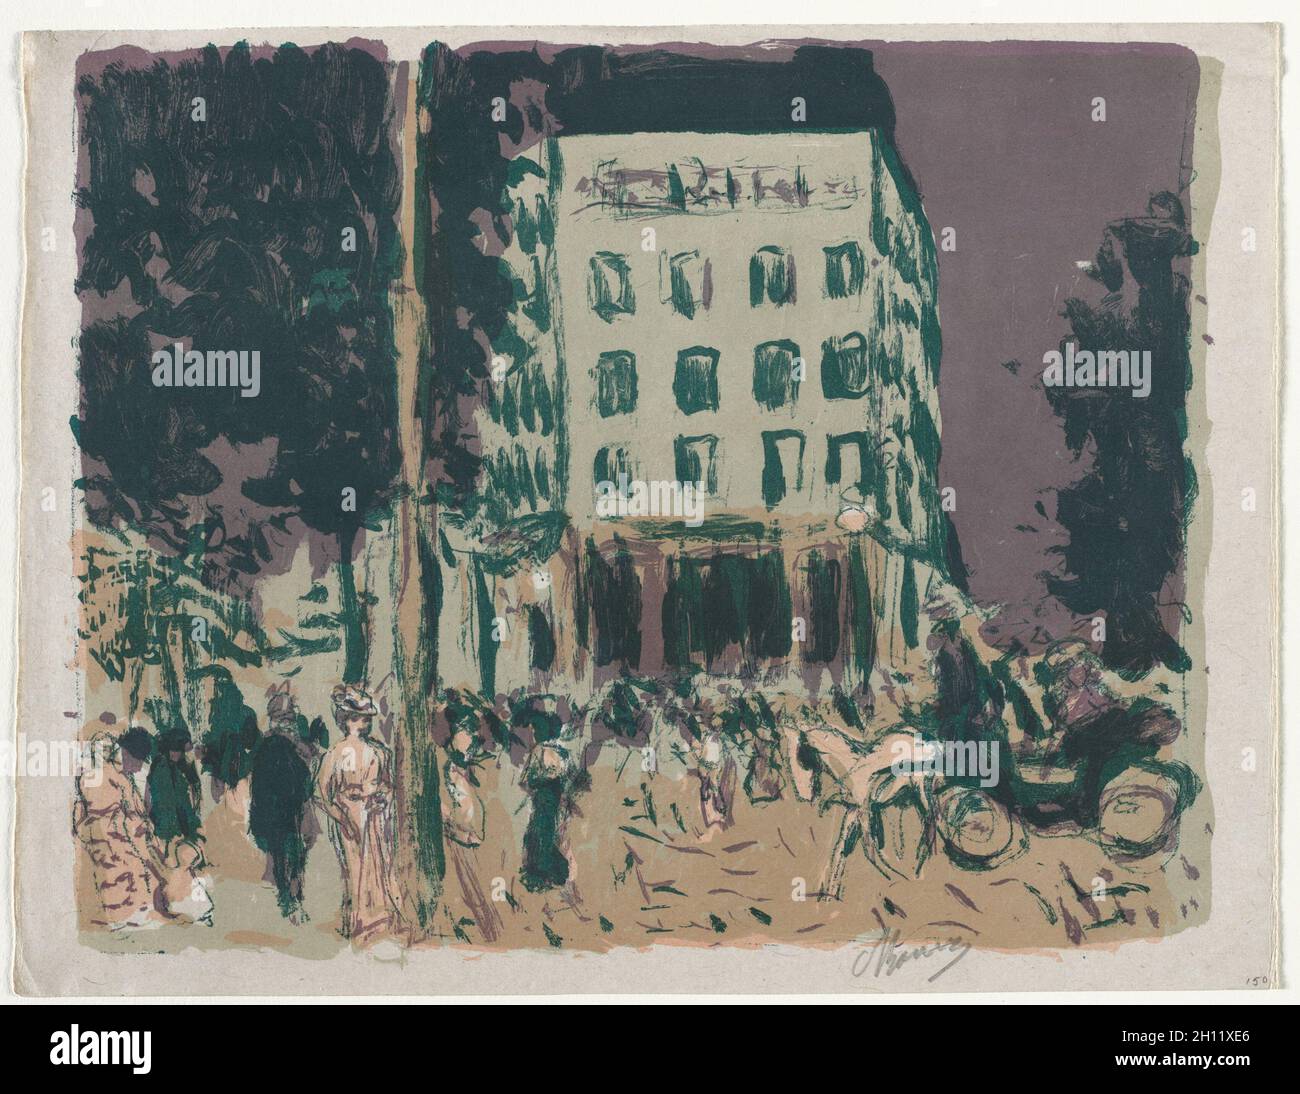 I Boulevards, 1900. Pierre Bonnard (francese, 1867-1947), pubblicato da Insel Verlag. Litografia a colori; foglio: 28 x 36.7 cm (11 x 14 7/16 pollici); immagine: 26.4 x 33.4 cm (10 3/8 x 13 1/8 pollici). Foto Stock